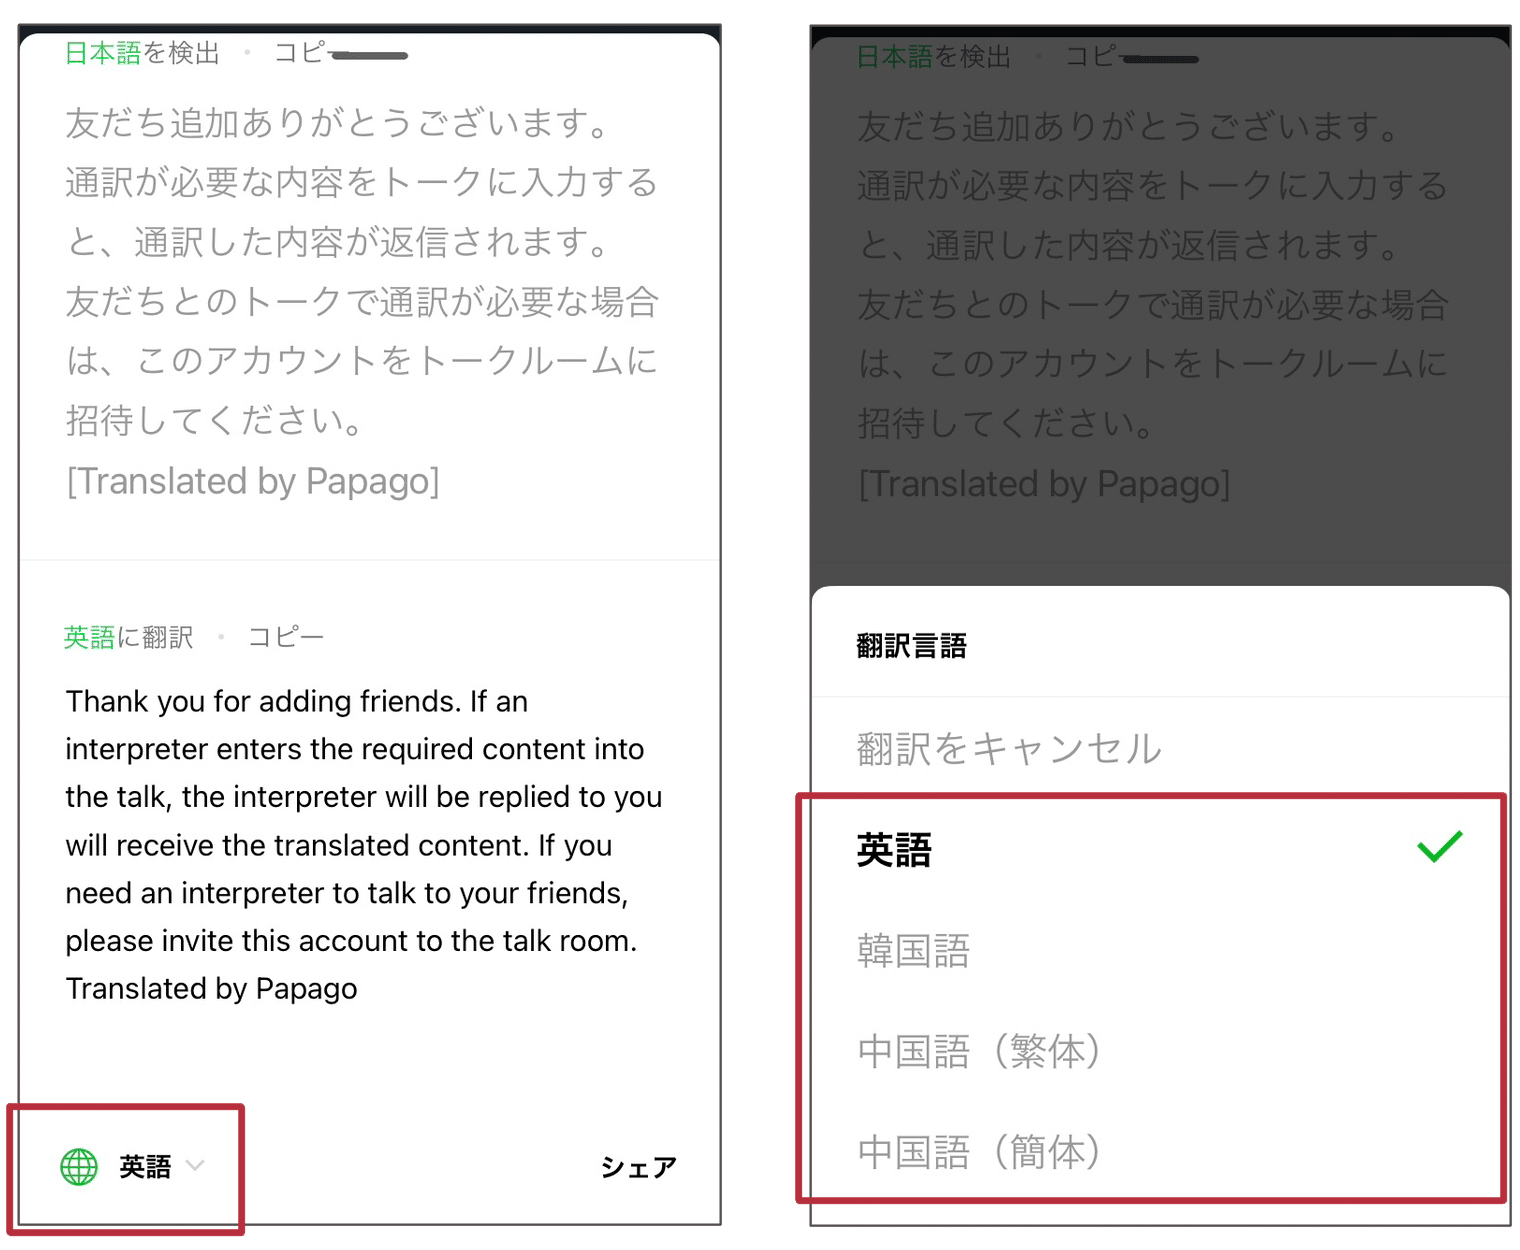 LINEのアプリで翻訳する方法